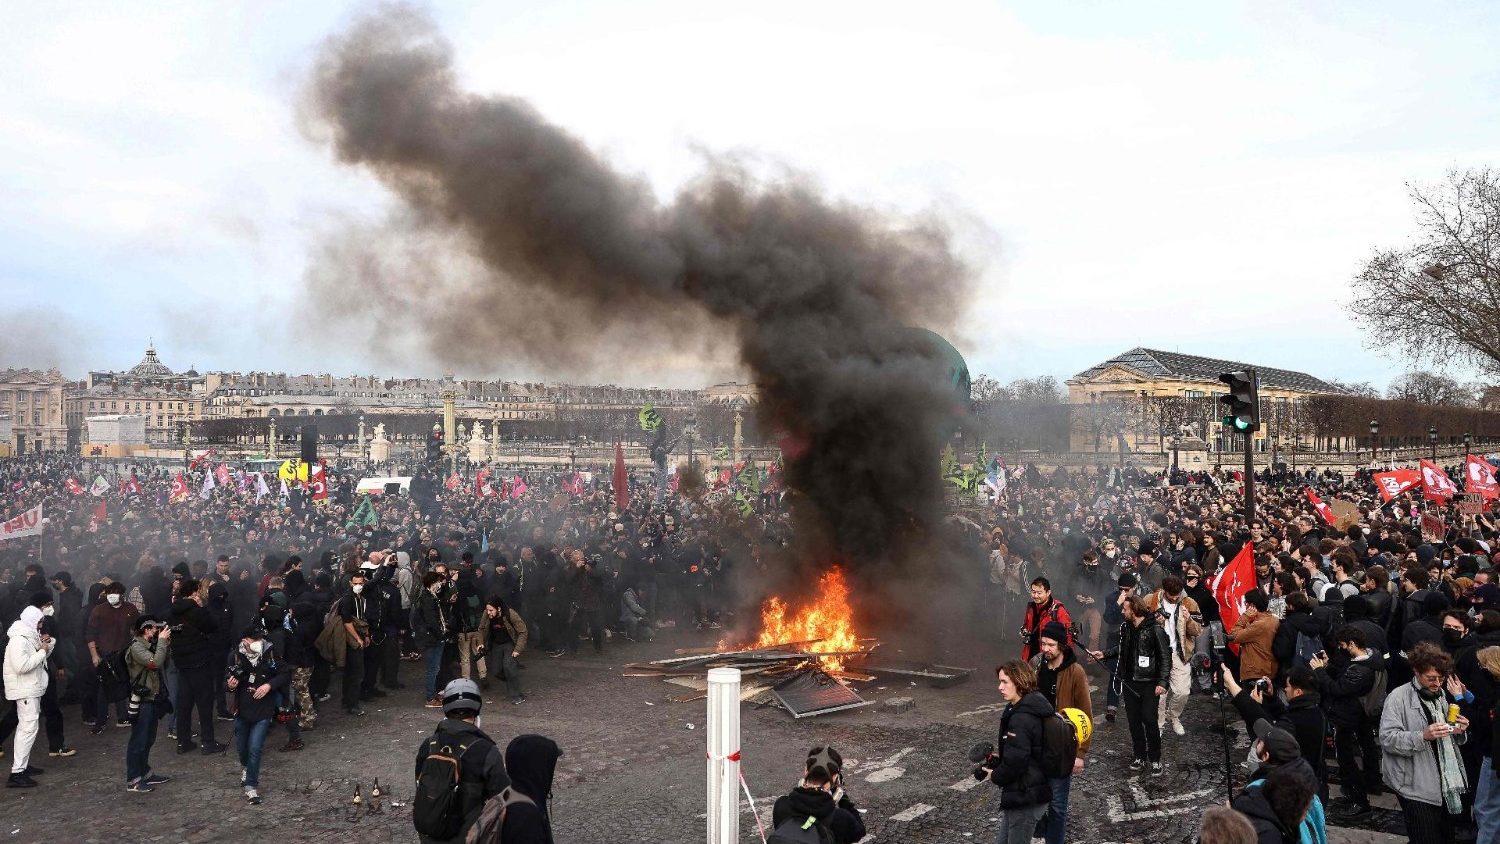 Francia, la riforma delle pensioni scavalca il Parlamento: rabbia in piazza  - Vatican News